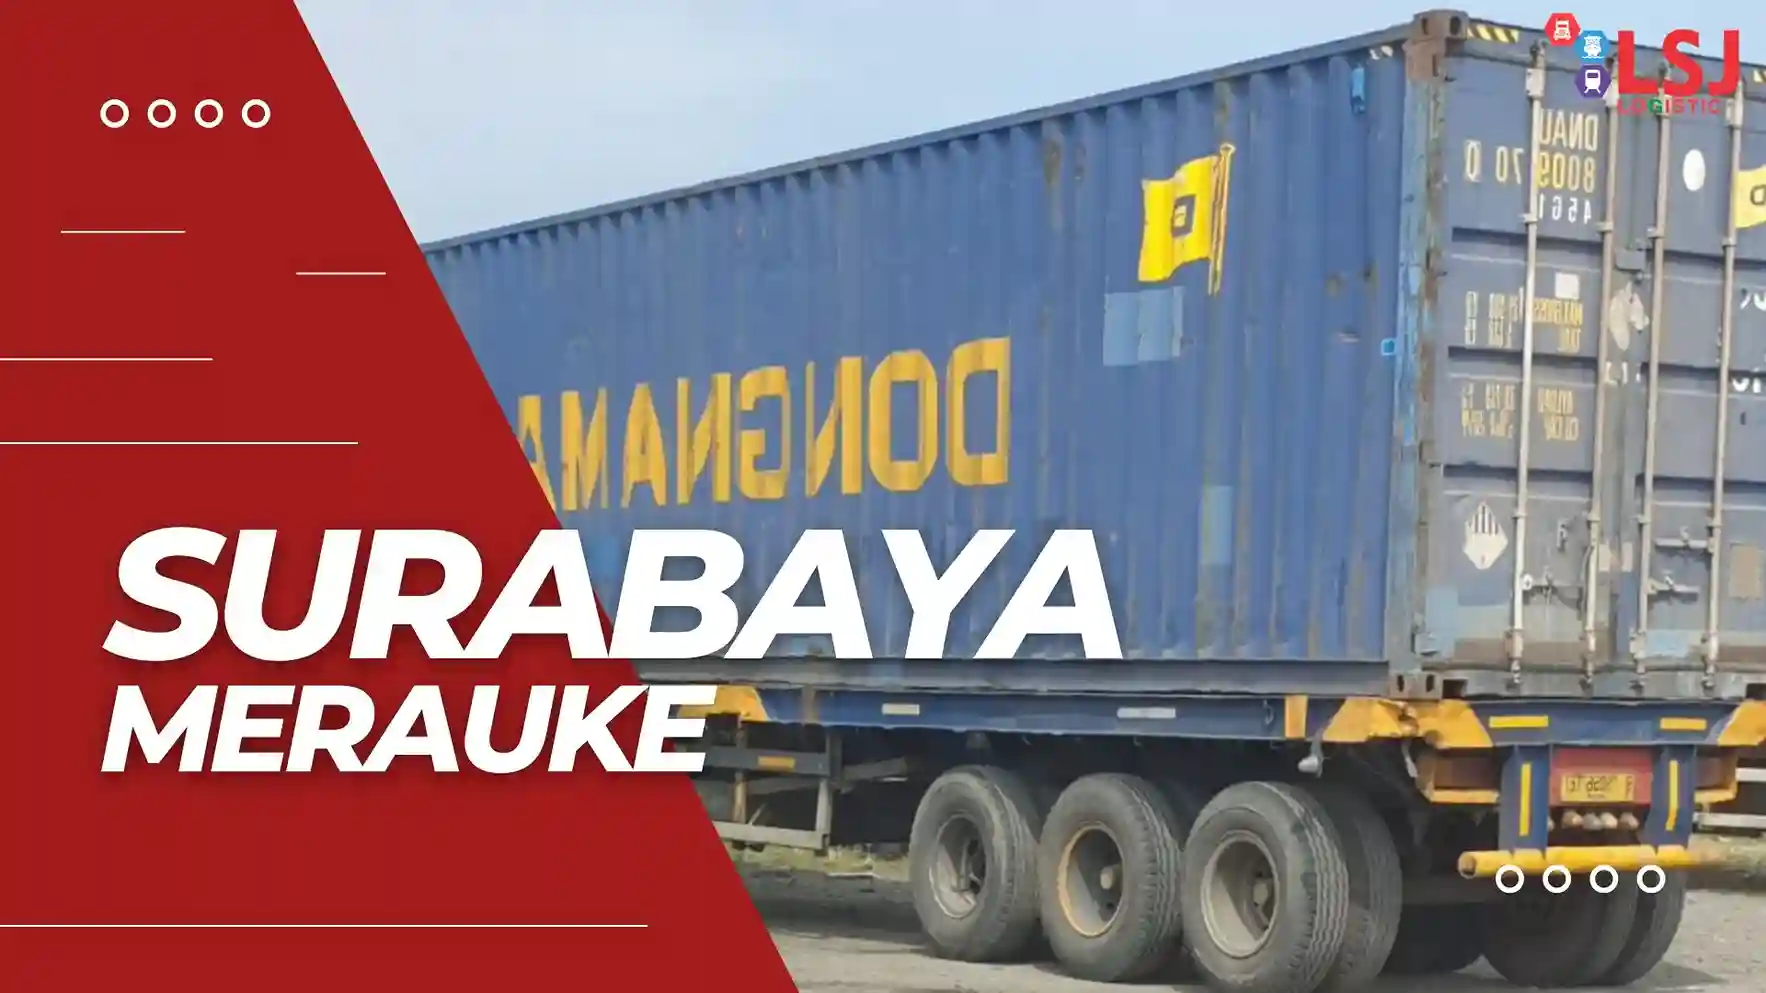 Ongkos Kirim Container Surabaya Maumere